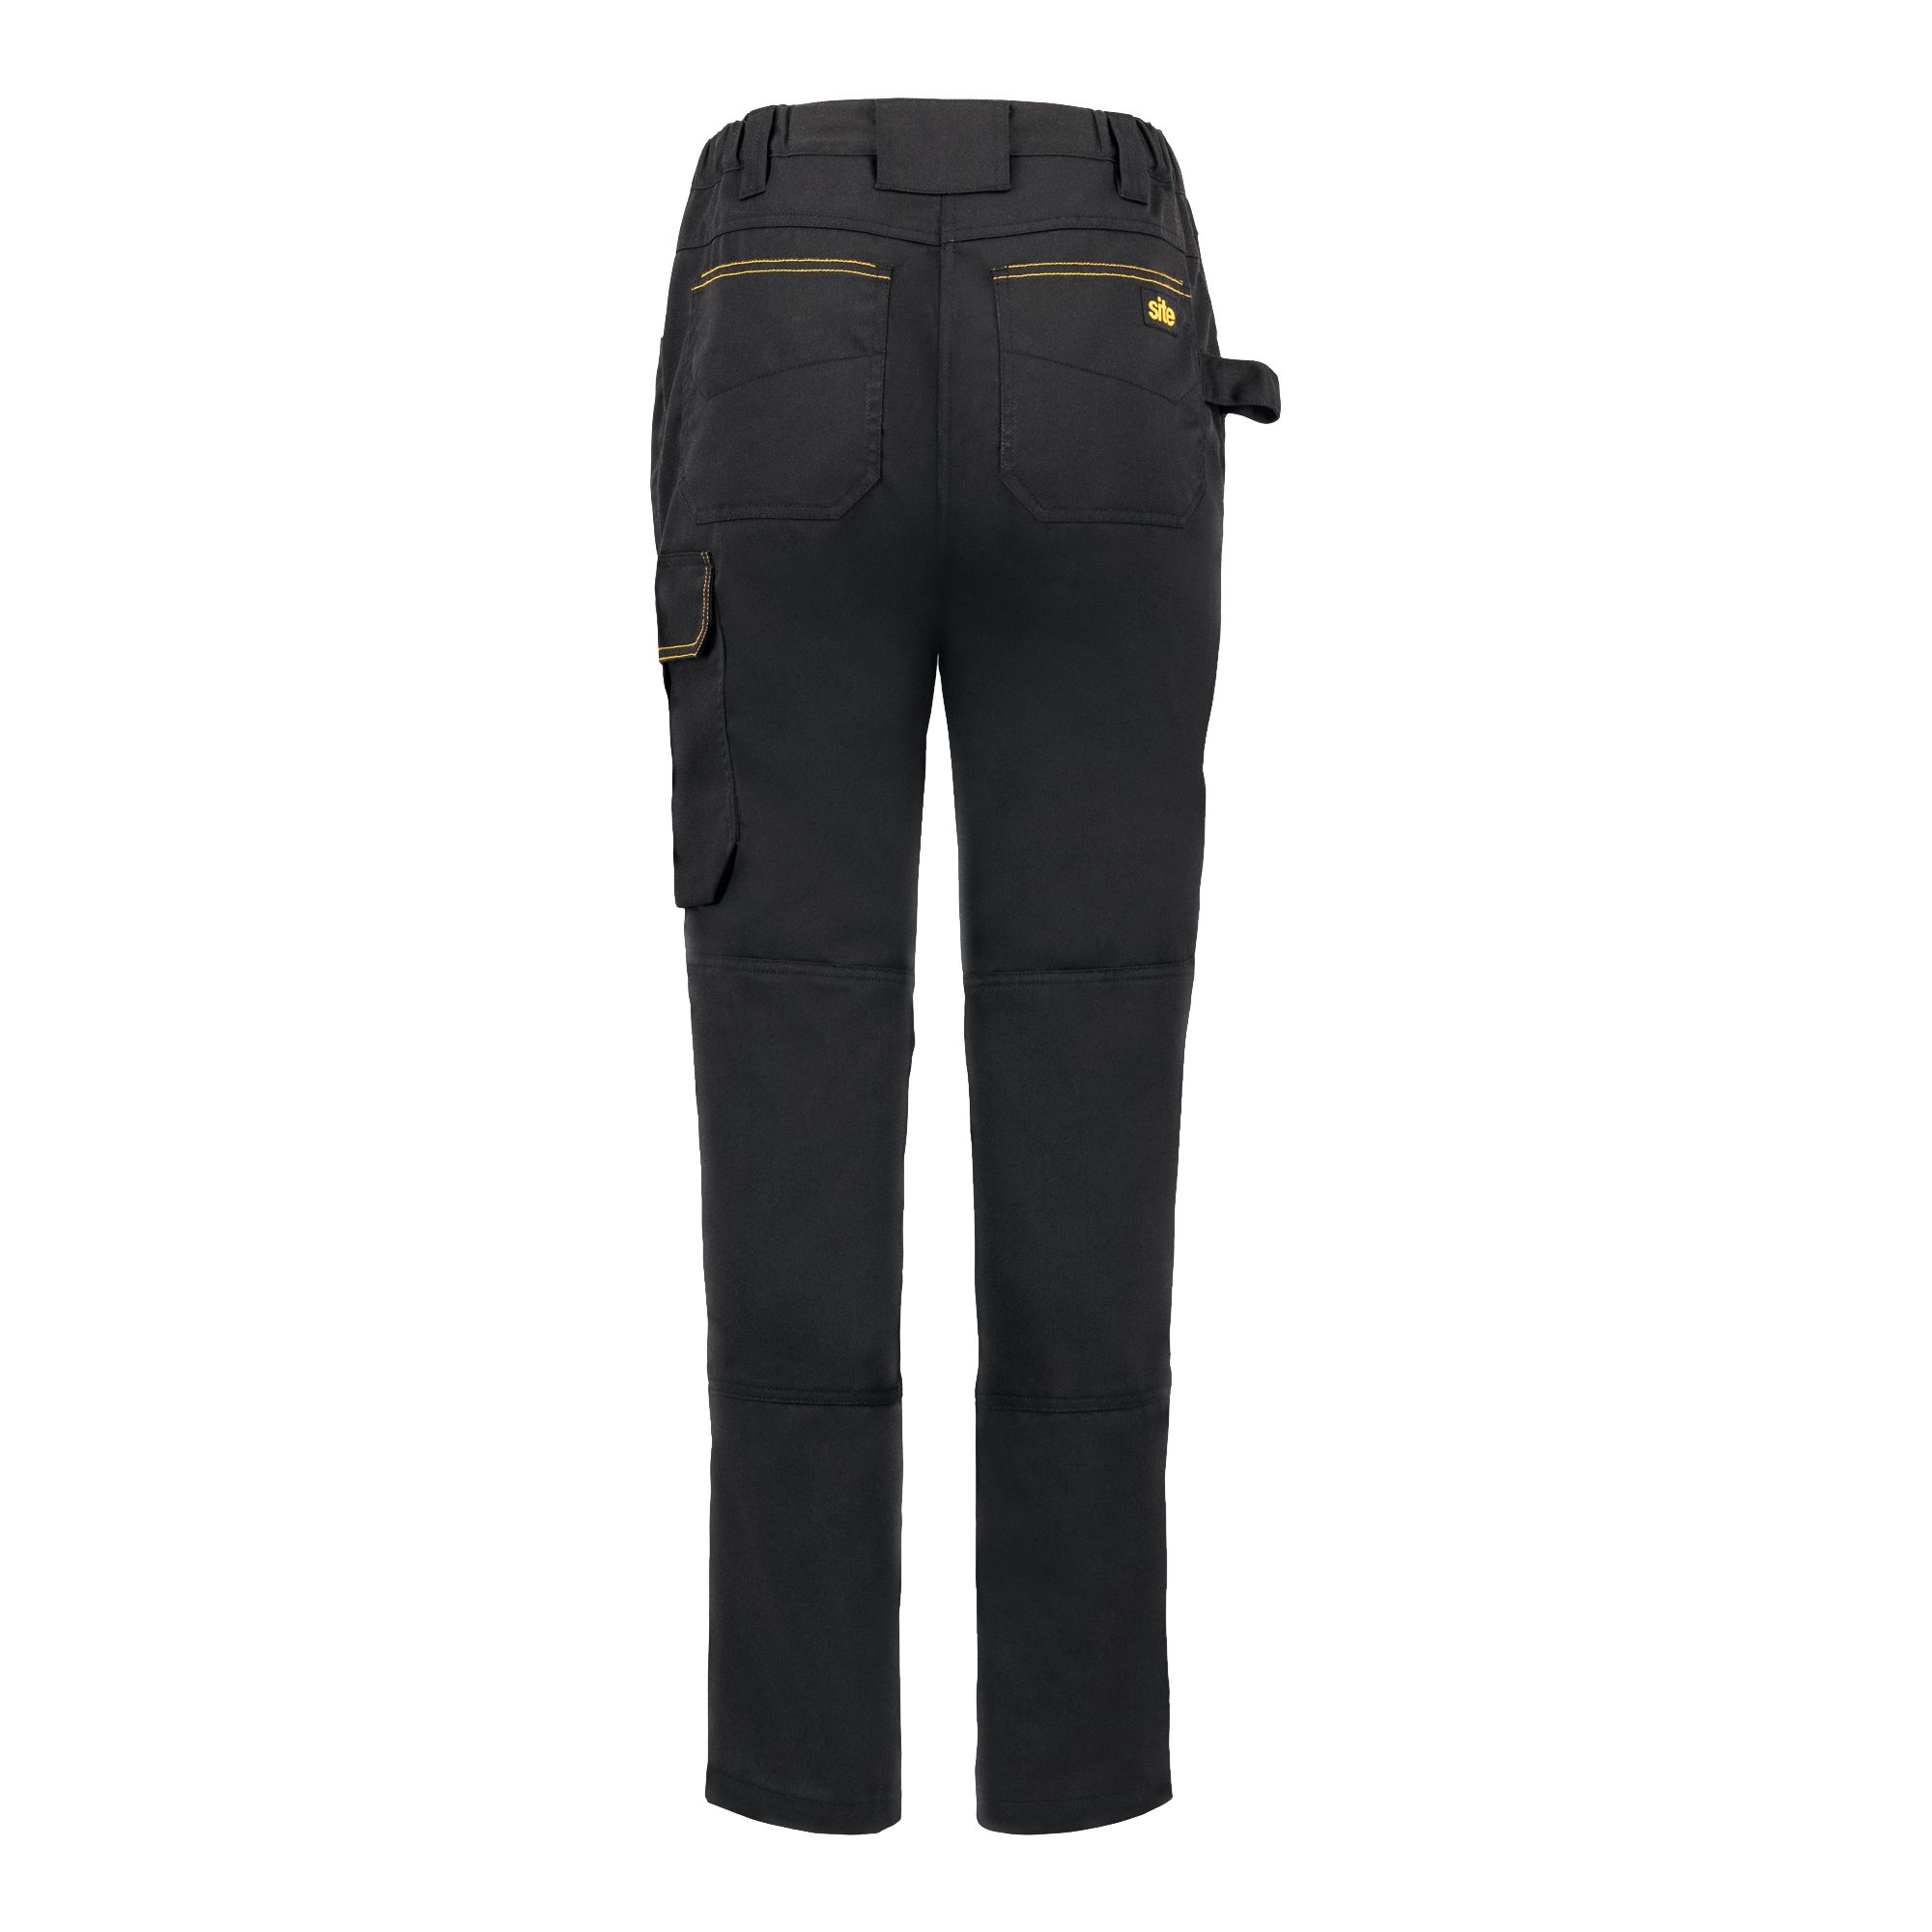 Site Heyward Black Ladies trousers, Size 12 L31"